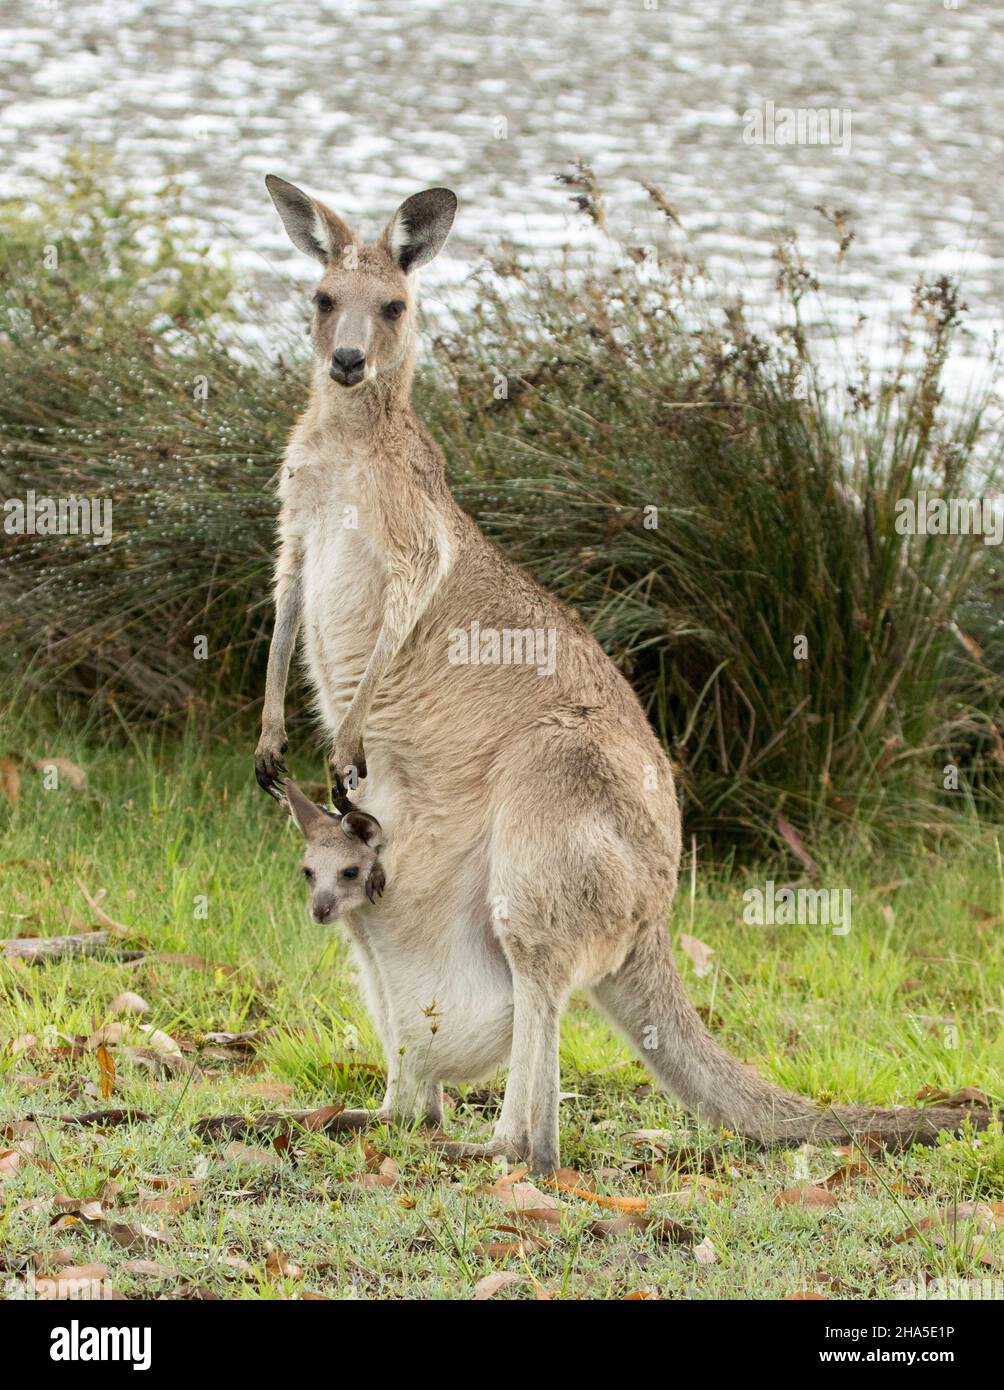 Kangourou gris de l'est avec joey minuscule qui se trouve dans sa poche, tous deux regardant l'appareil photo, dans l'eau sauvage de la plage en Australie. Banque D'Images